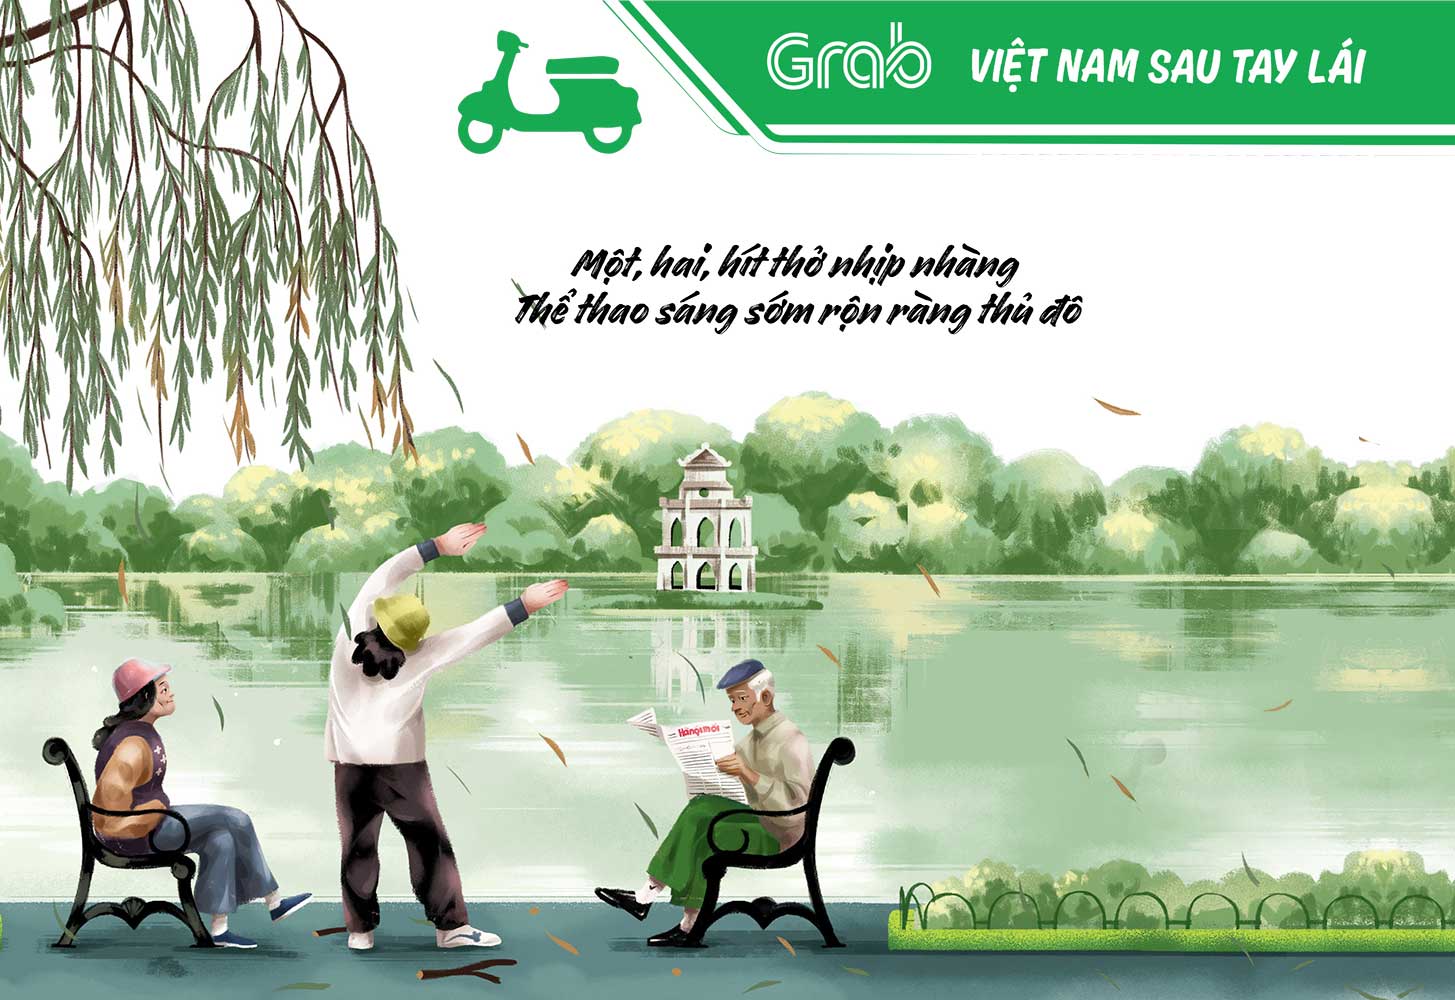 Grab Việt Nam - Việt Nam sau tay lái 1